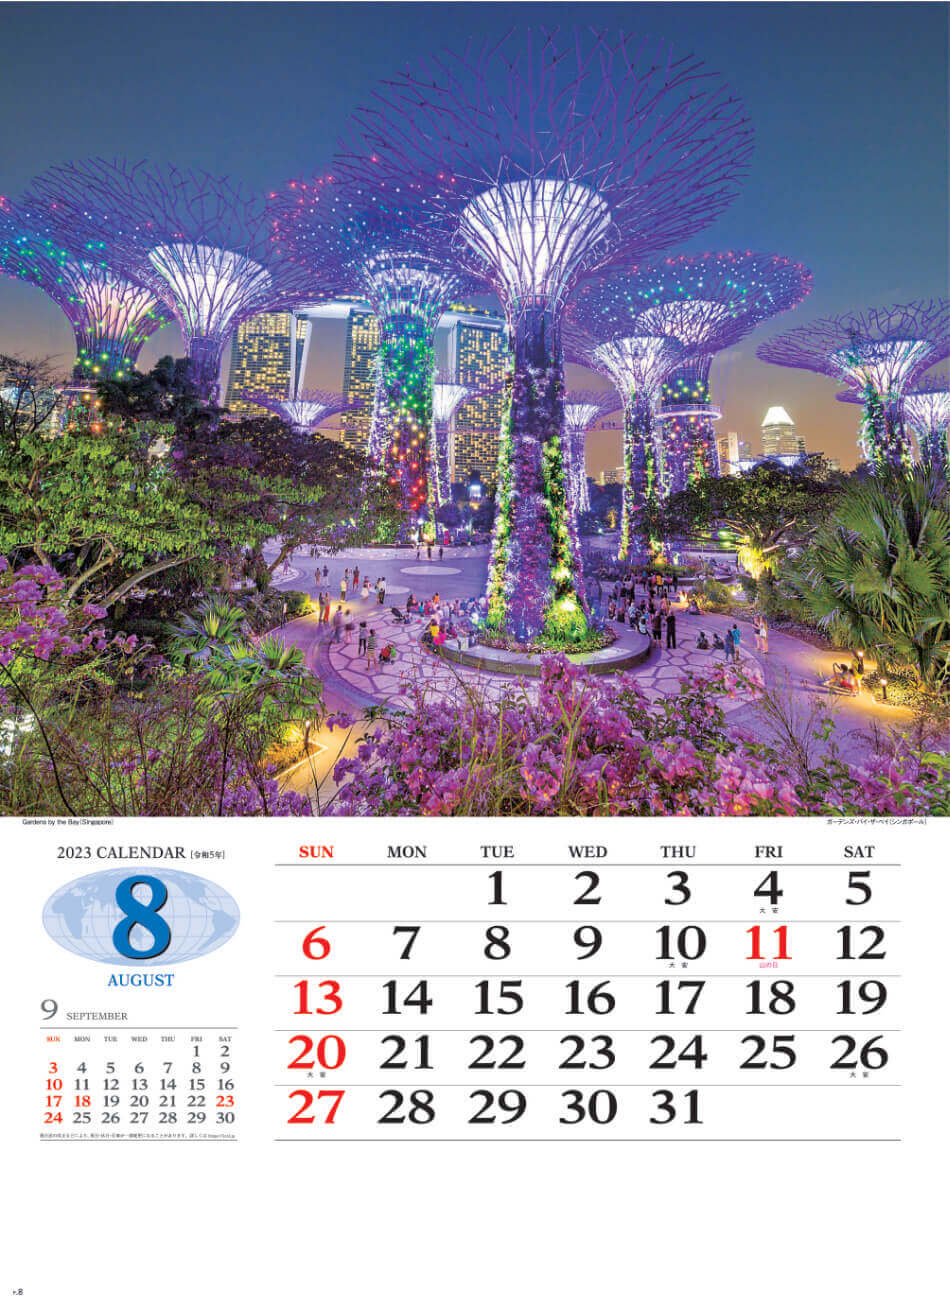 8月 ガーデンス・バイ・ザ・ベイ(シンガポール) 世界の景観 2023年カレンダーの画像